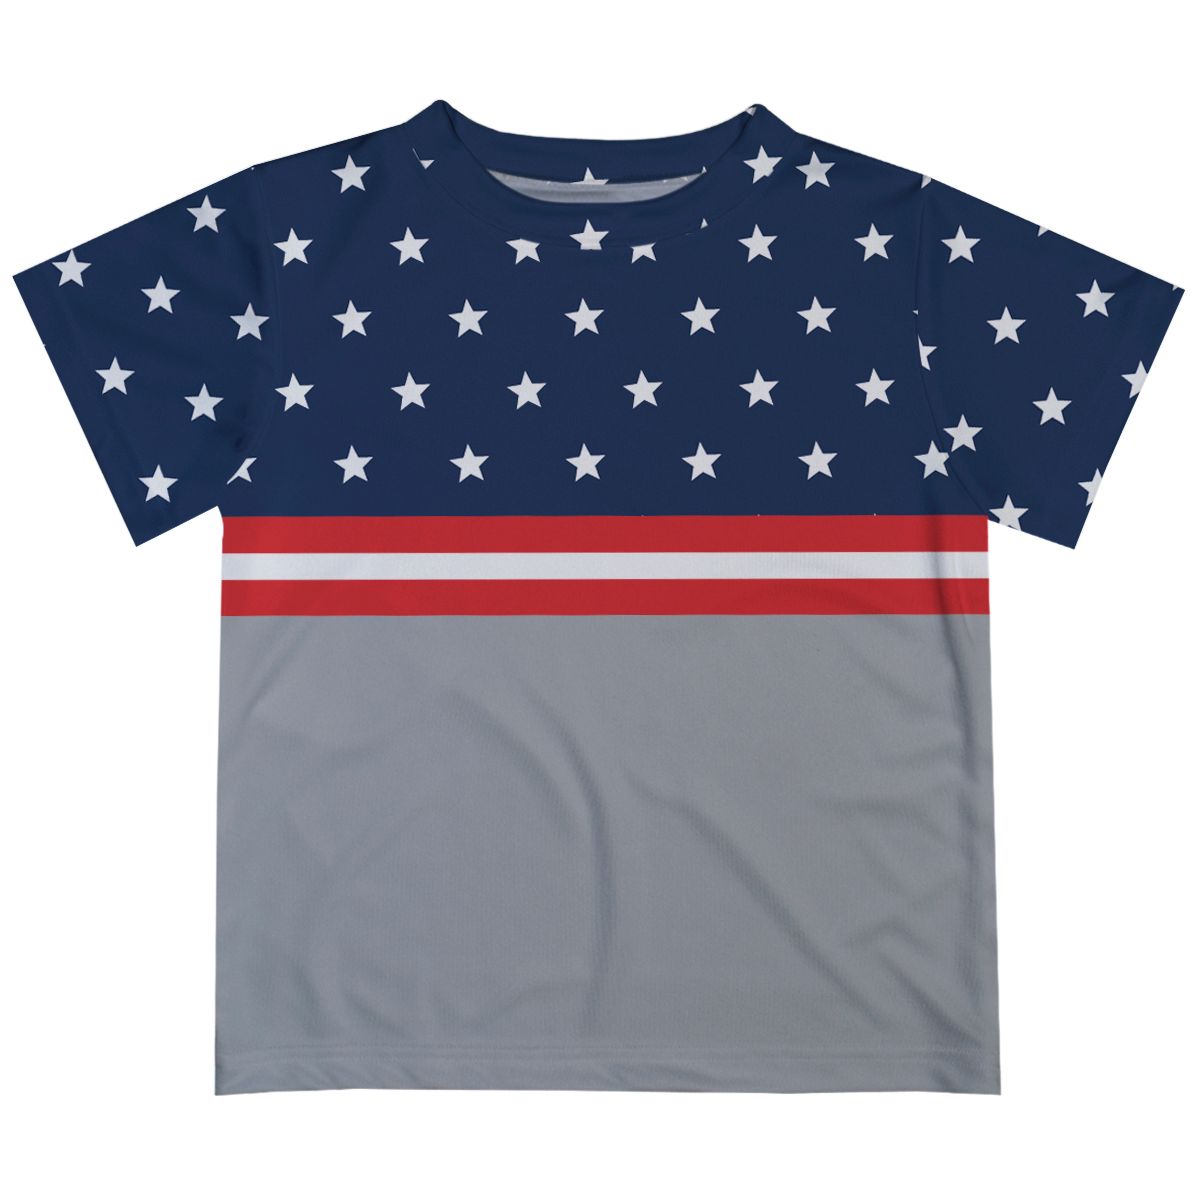 Stars Gray and Navy Short Sleeve Tee Shirt - Wimziy&Co.